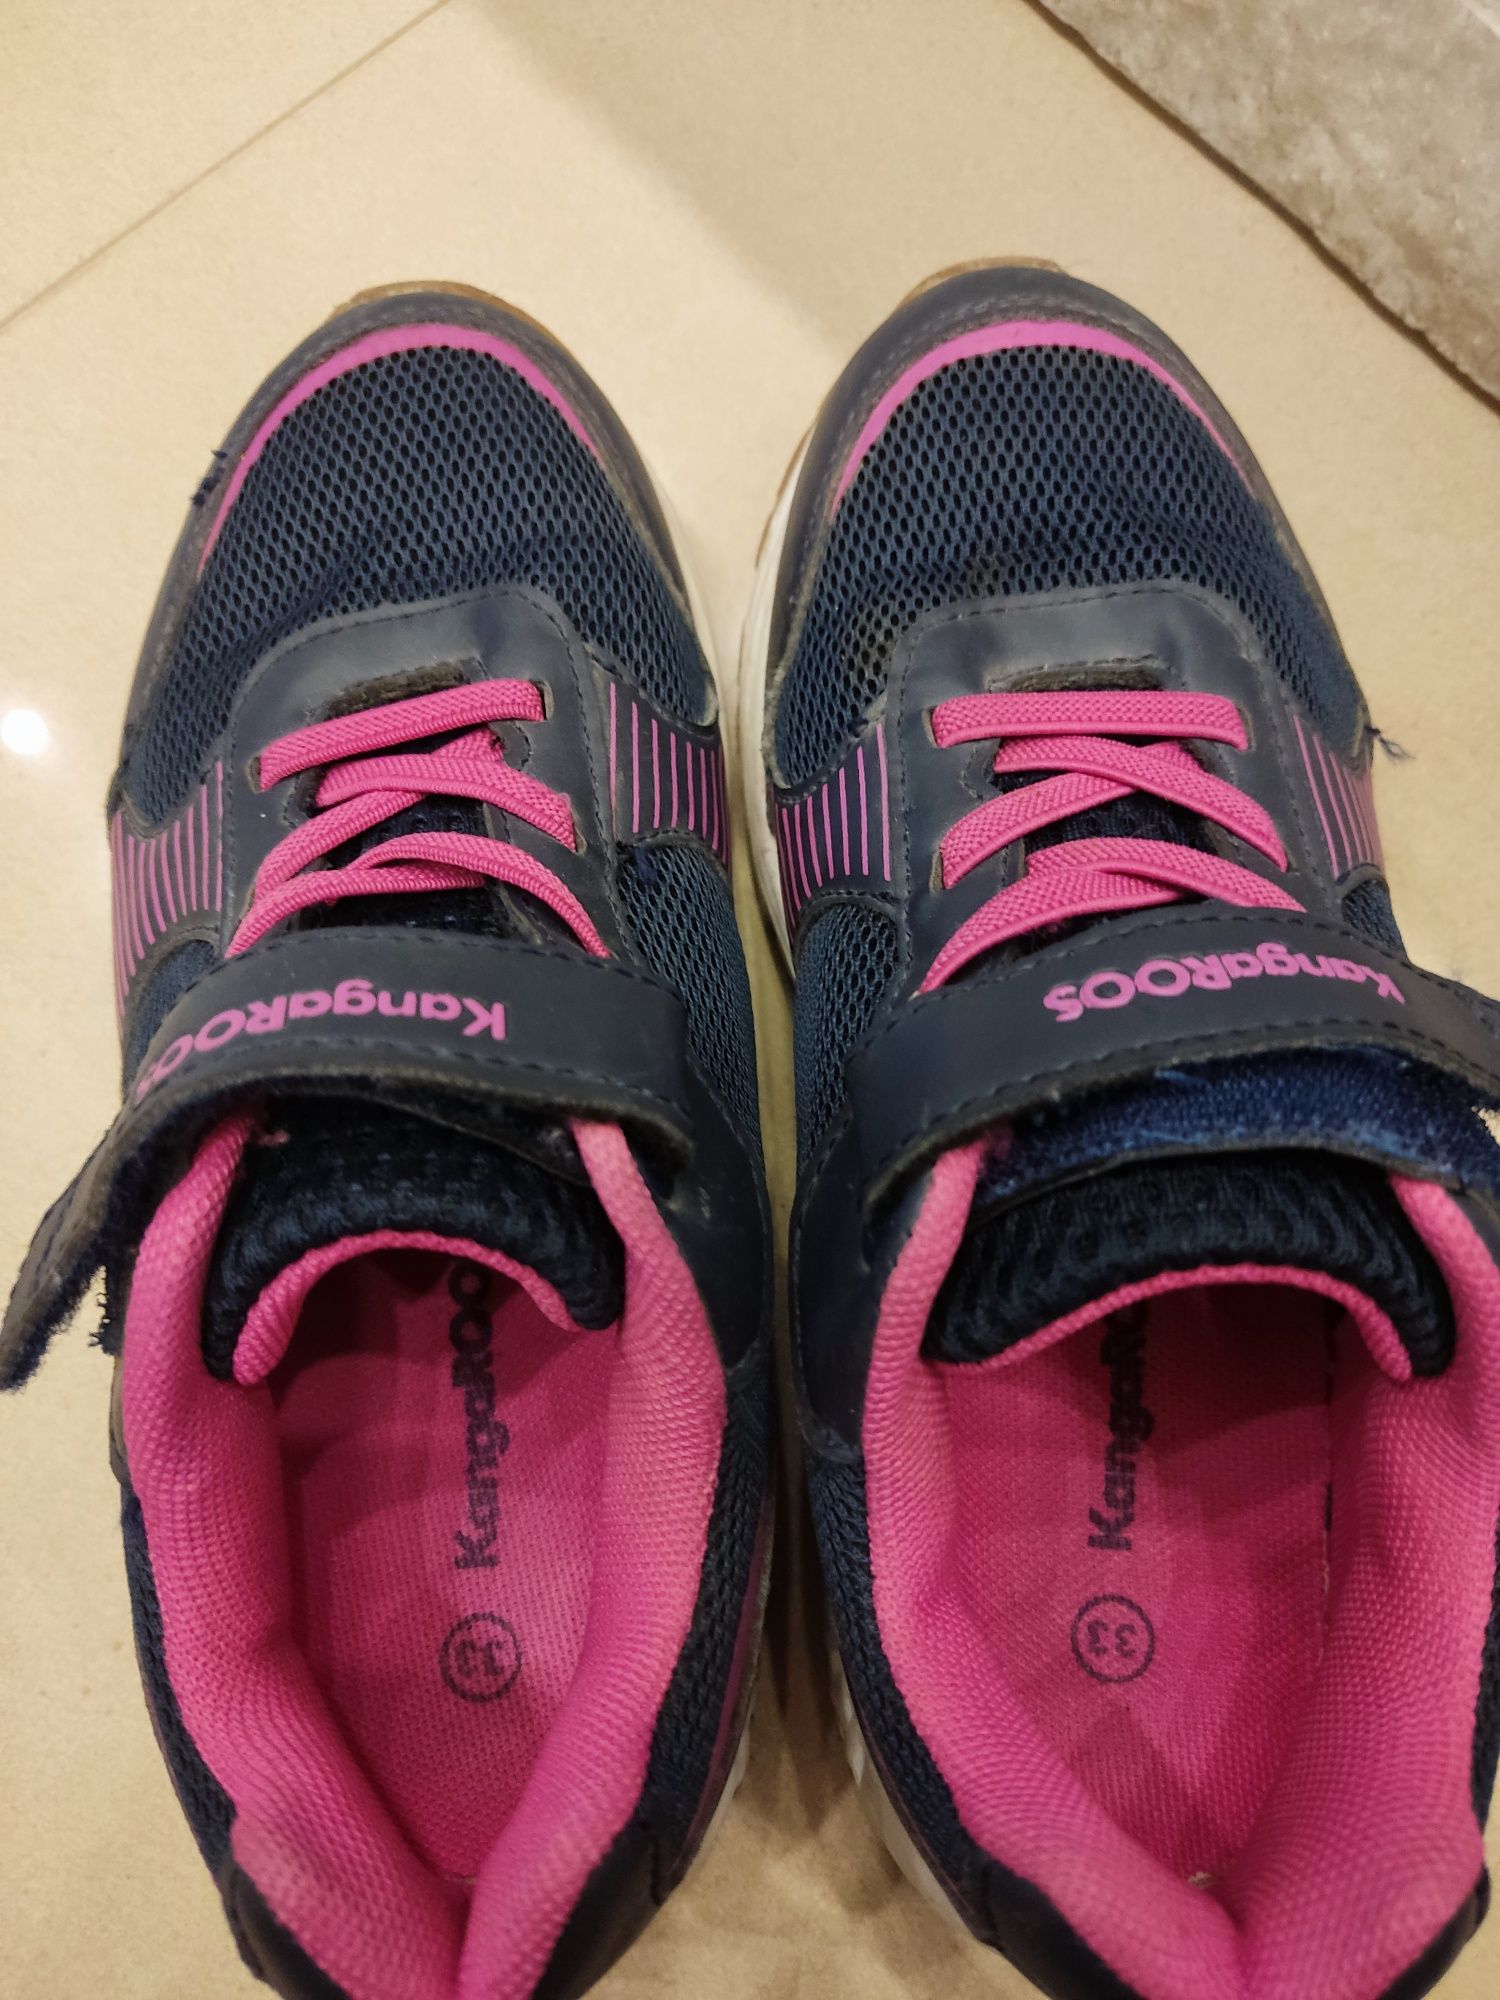 KangaRoos buty sportowe dla dziewczynki markowe lekkie r.33